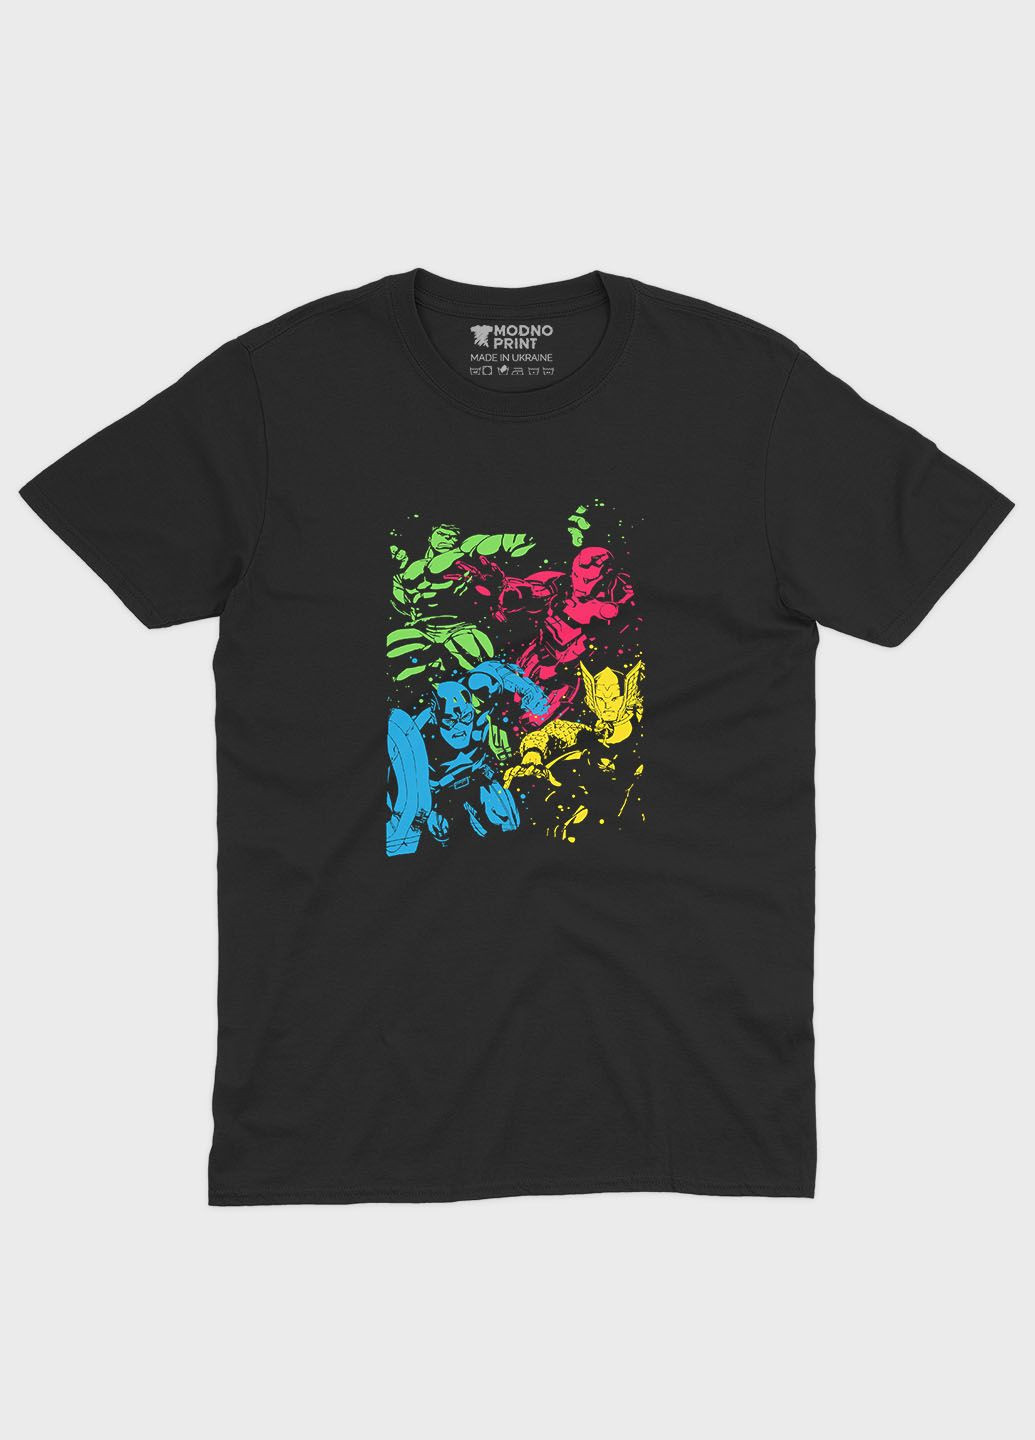 Черная демисезонная футболка для мальчика с принтом супергероями - мстители (ts001-1-bl-006-025-002-b) Modno